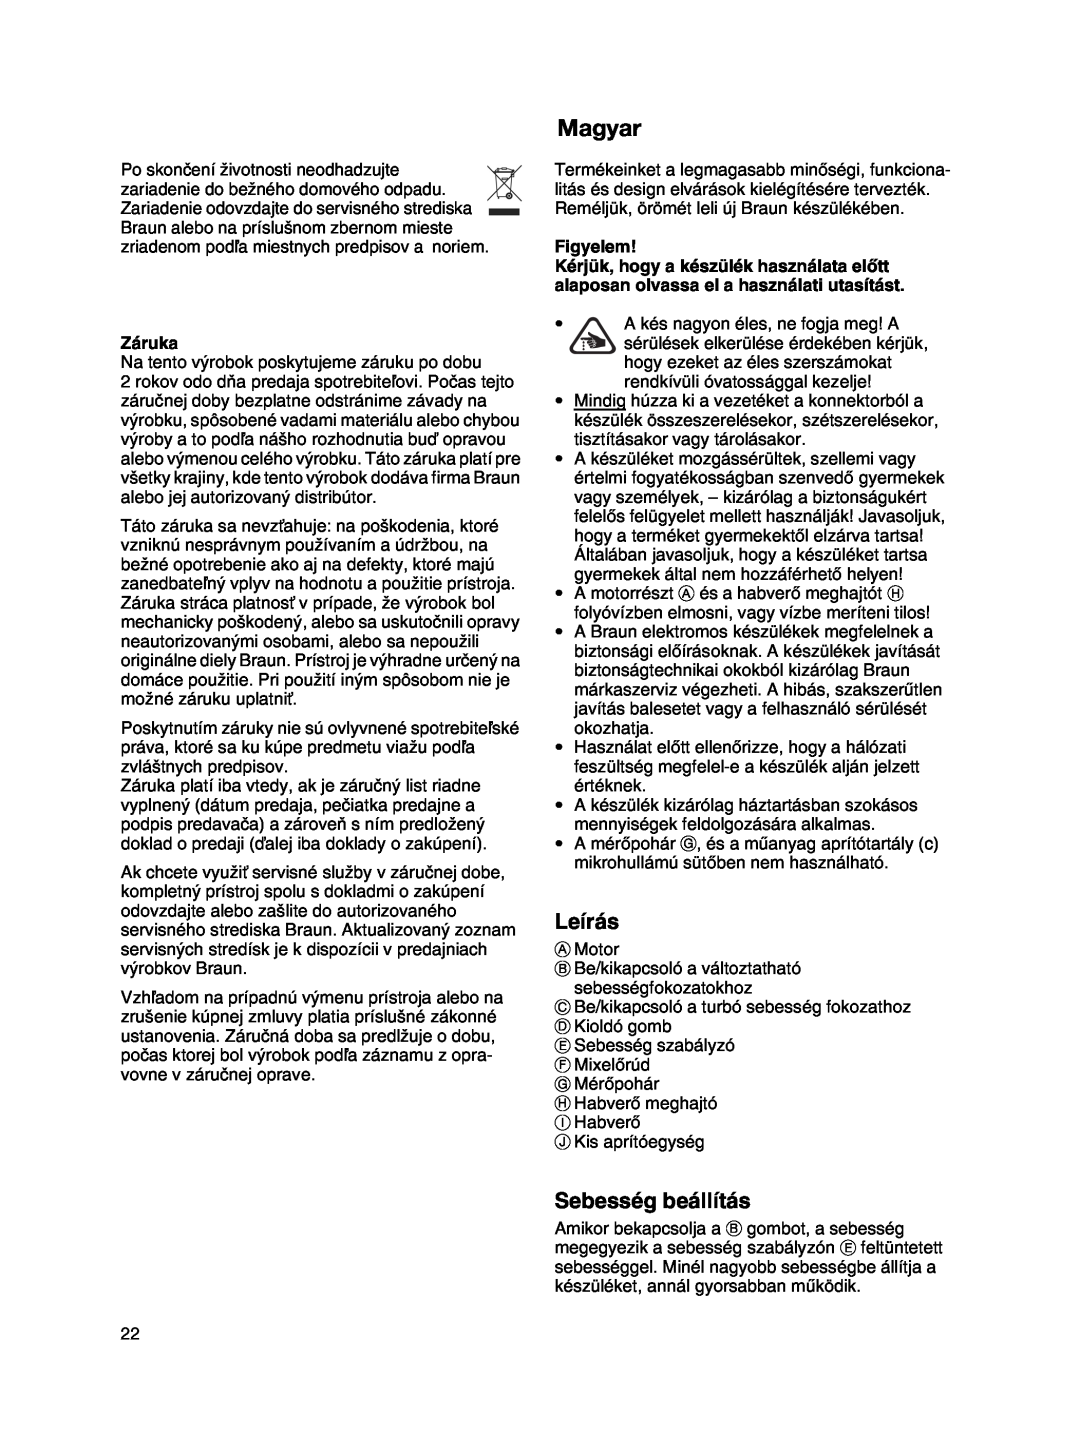 Braun MR 500 manual Magyar, Leírás, Sebesség beállítás, Figyelem, Záruka 